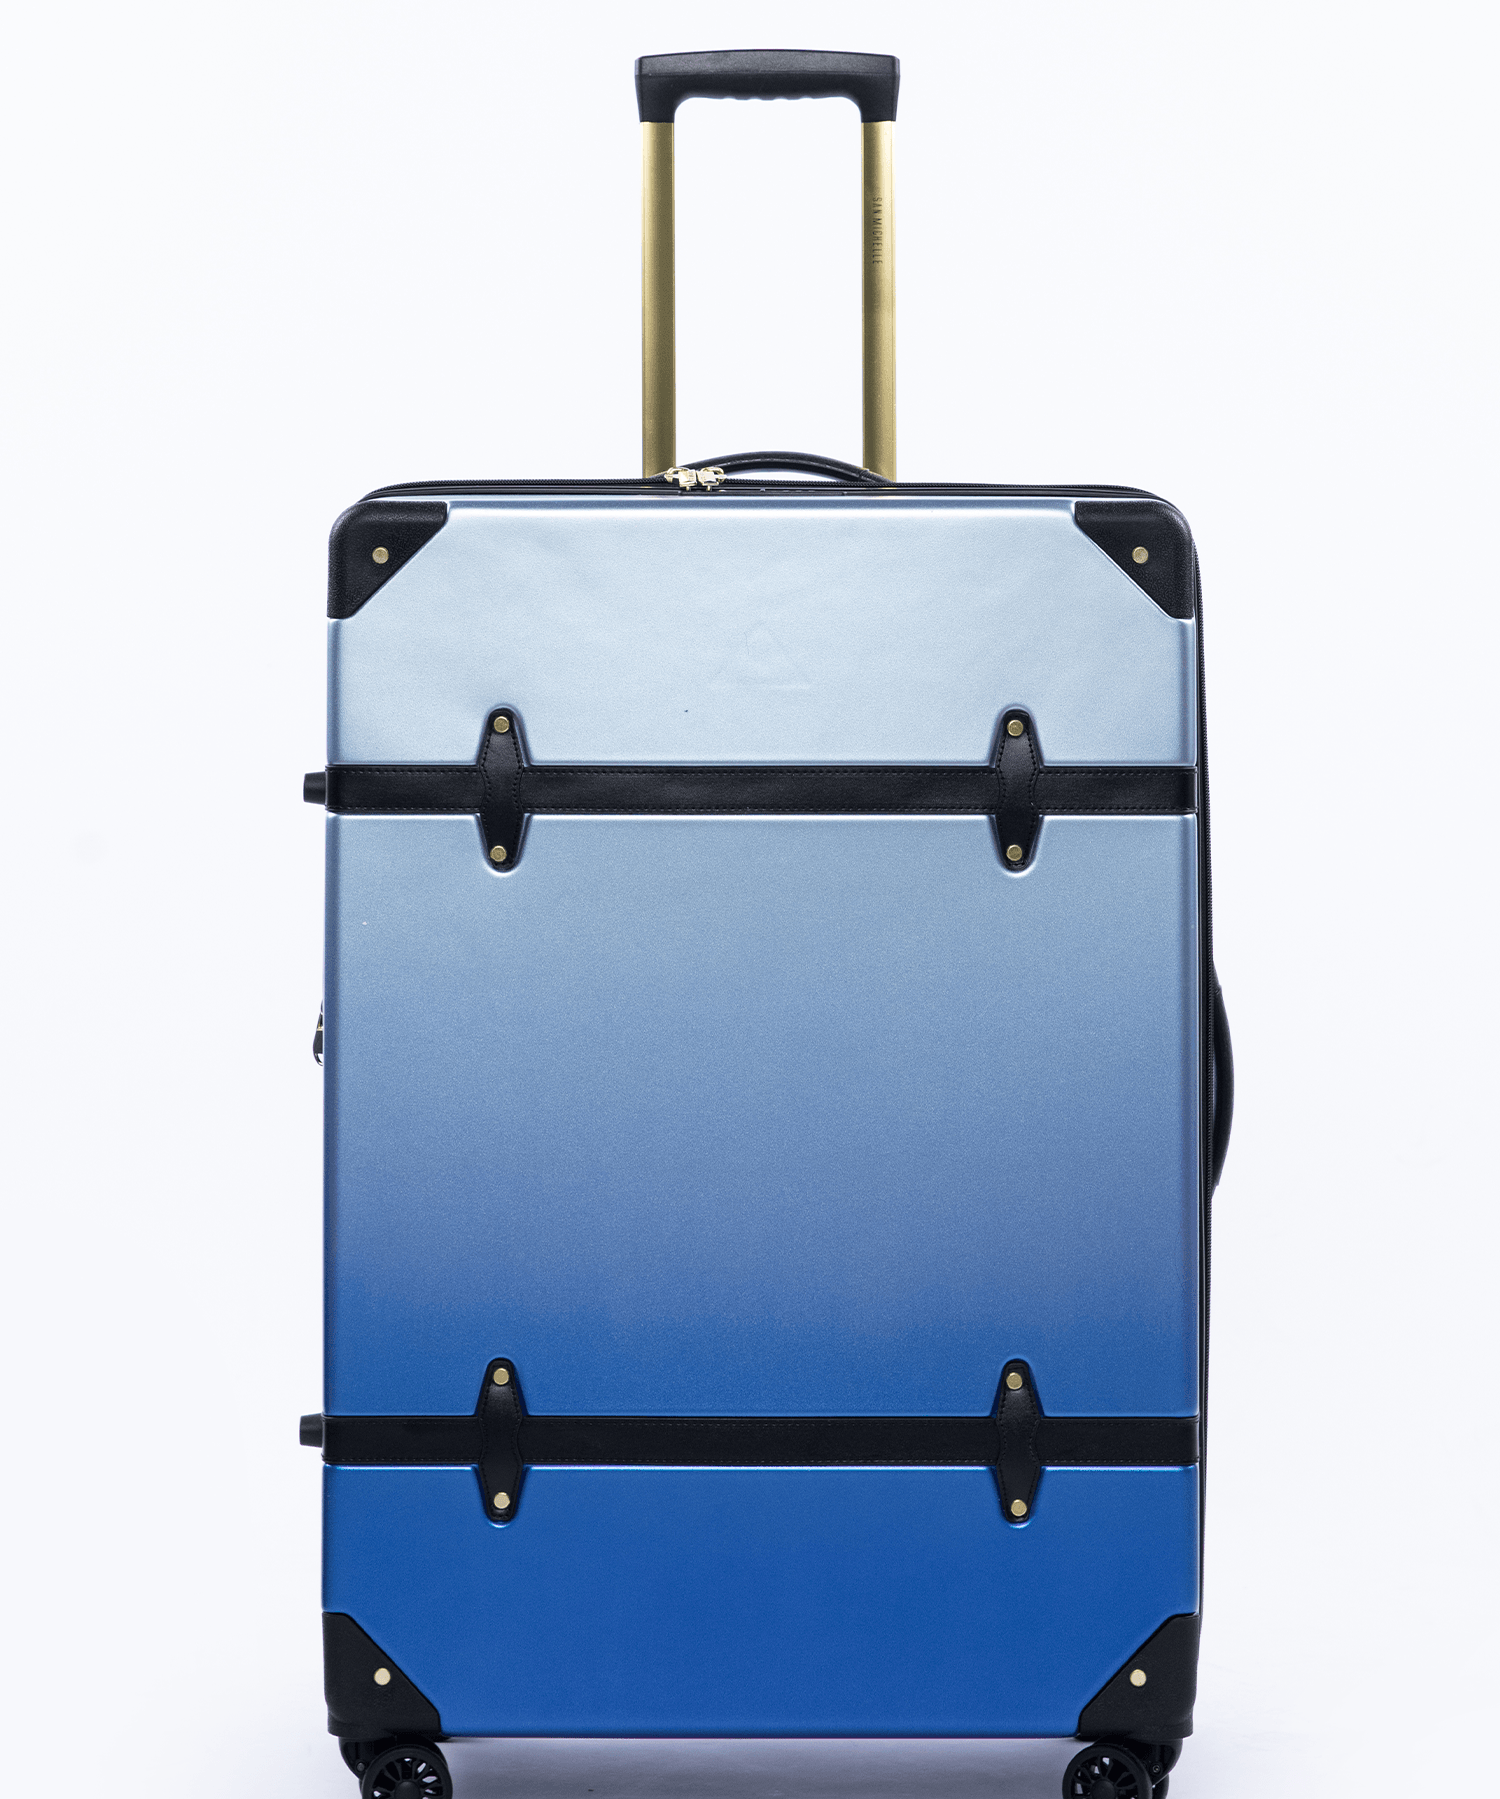 San Michelle Vintage Traveller 77cm Suitcase - San Michelle Bags suitcase nz